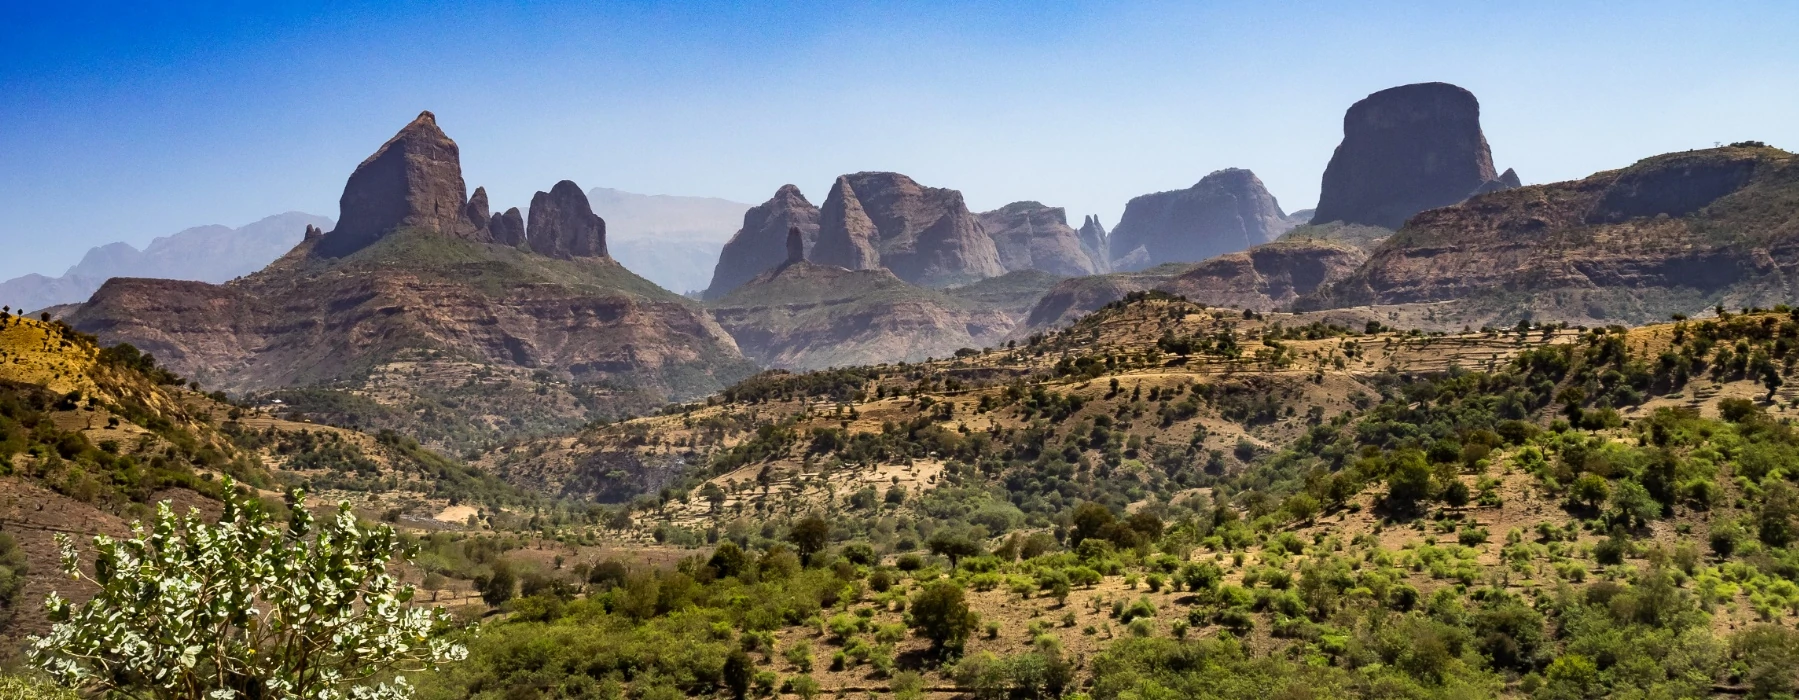 Simien Mountains - Trekking Ethiopia